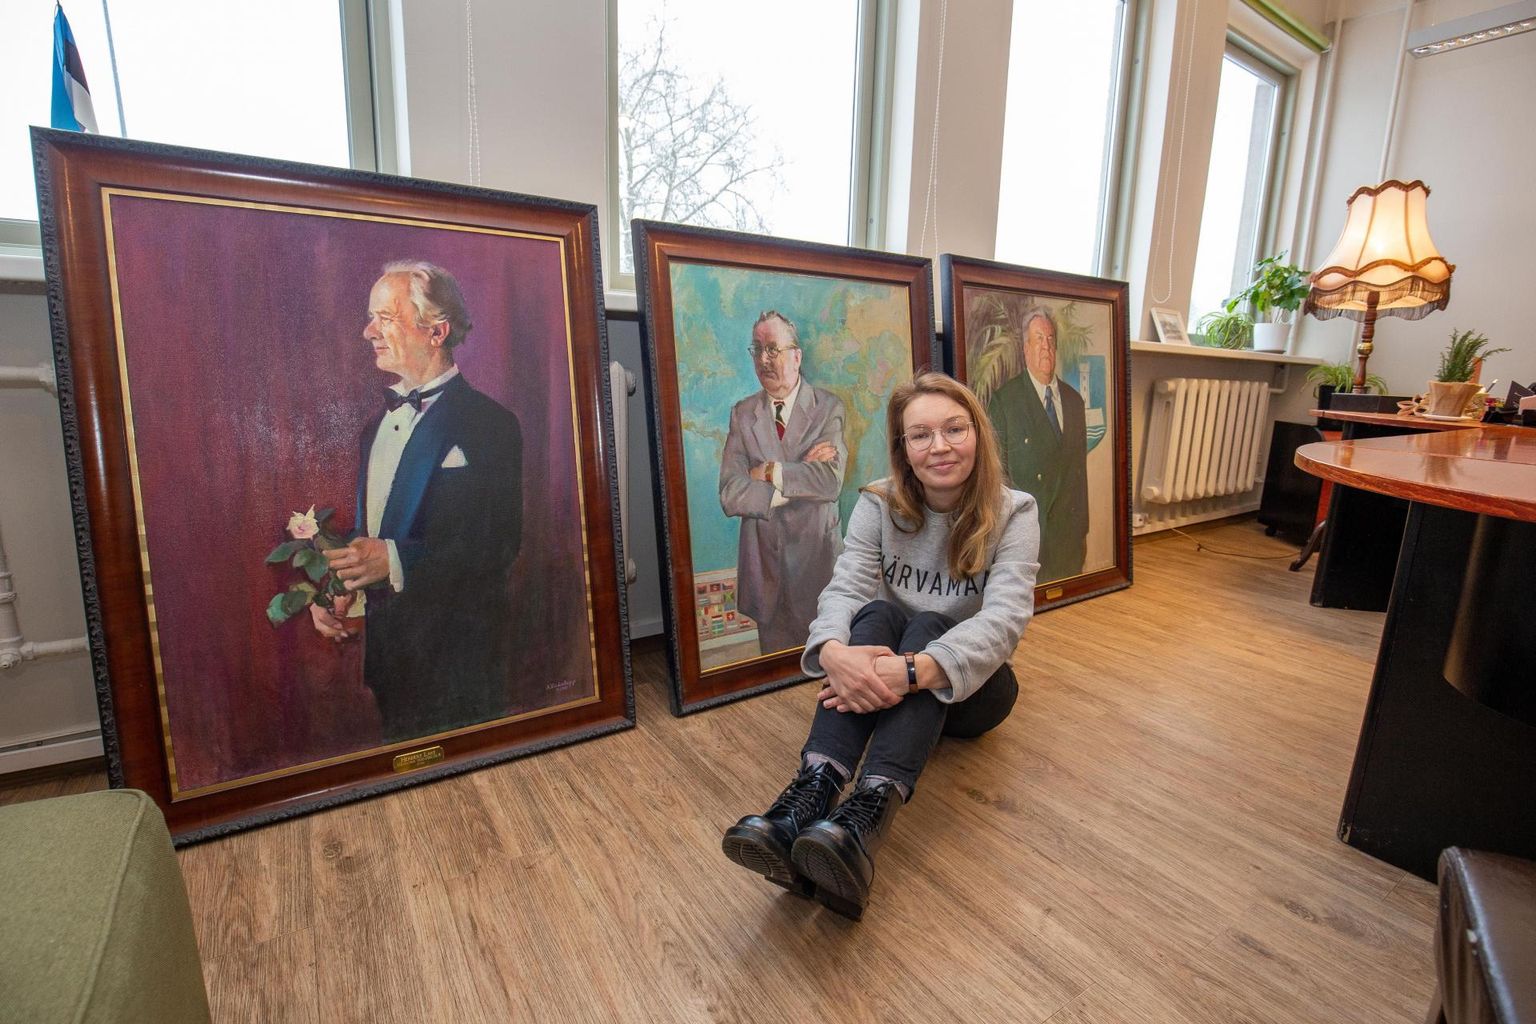 Paide muusika- ja teatrimaja direktor Martha-Beryl Grauberg lubab kolme Järvamaa vapimärgi kavaleri taasavastatud maalid panna vabariigi aastapäevani galeriisse vaatamiseks välja.